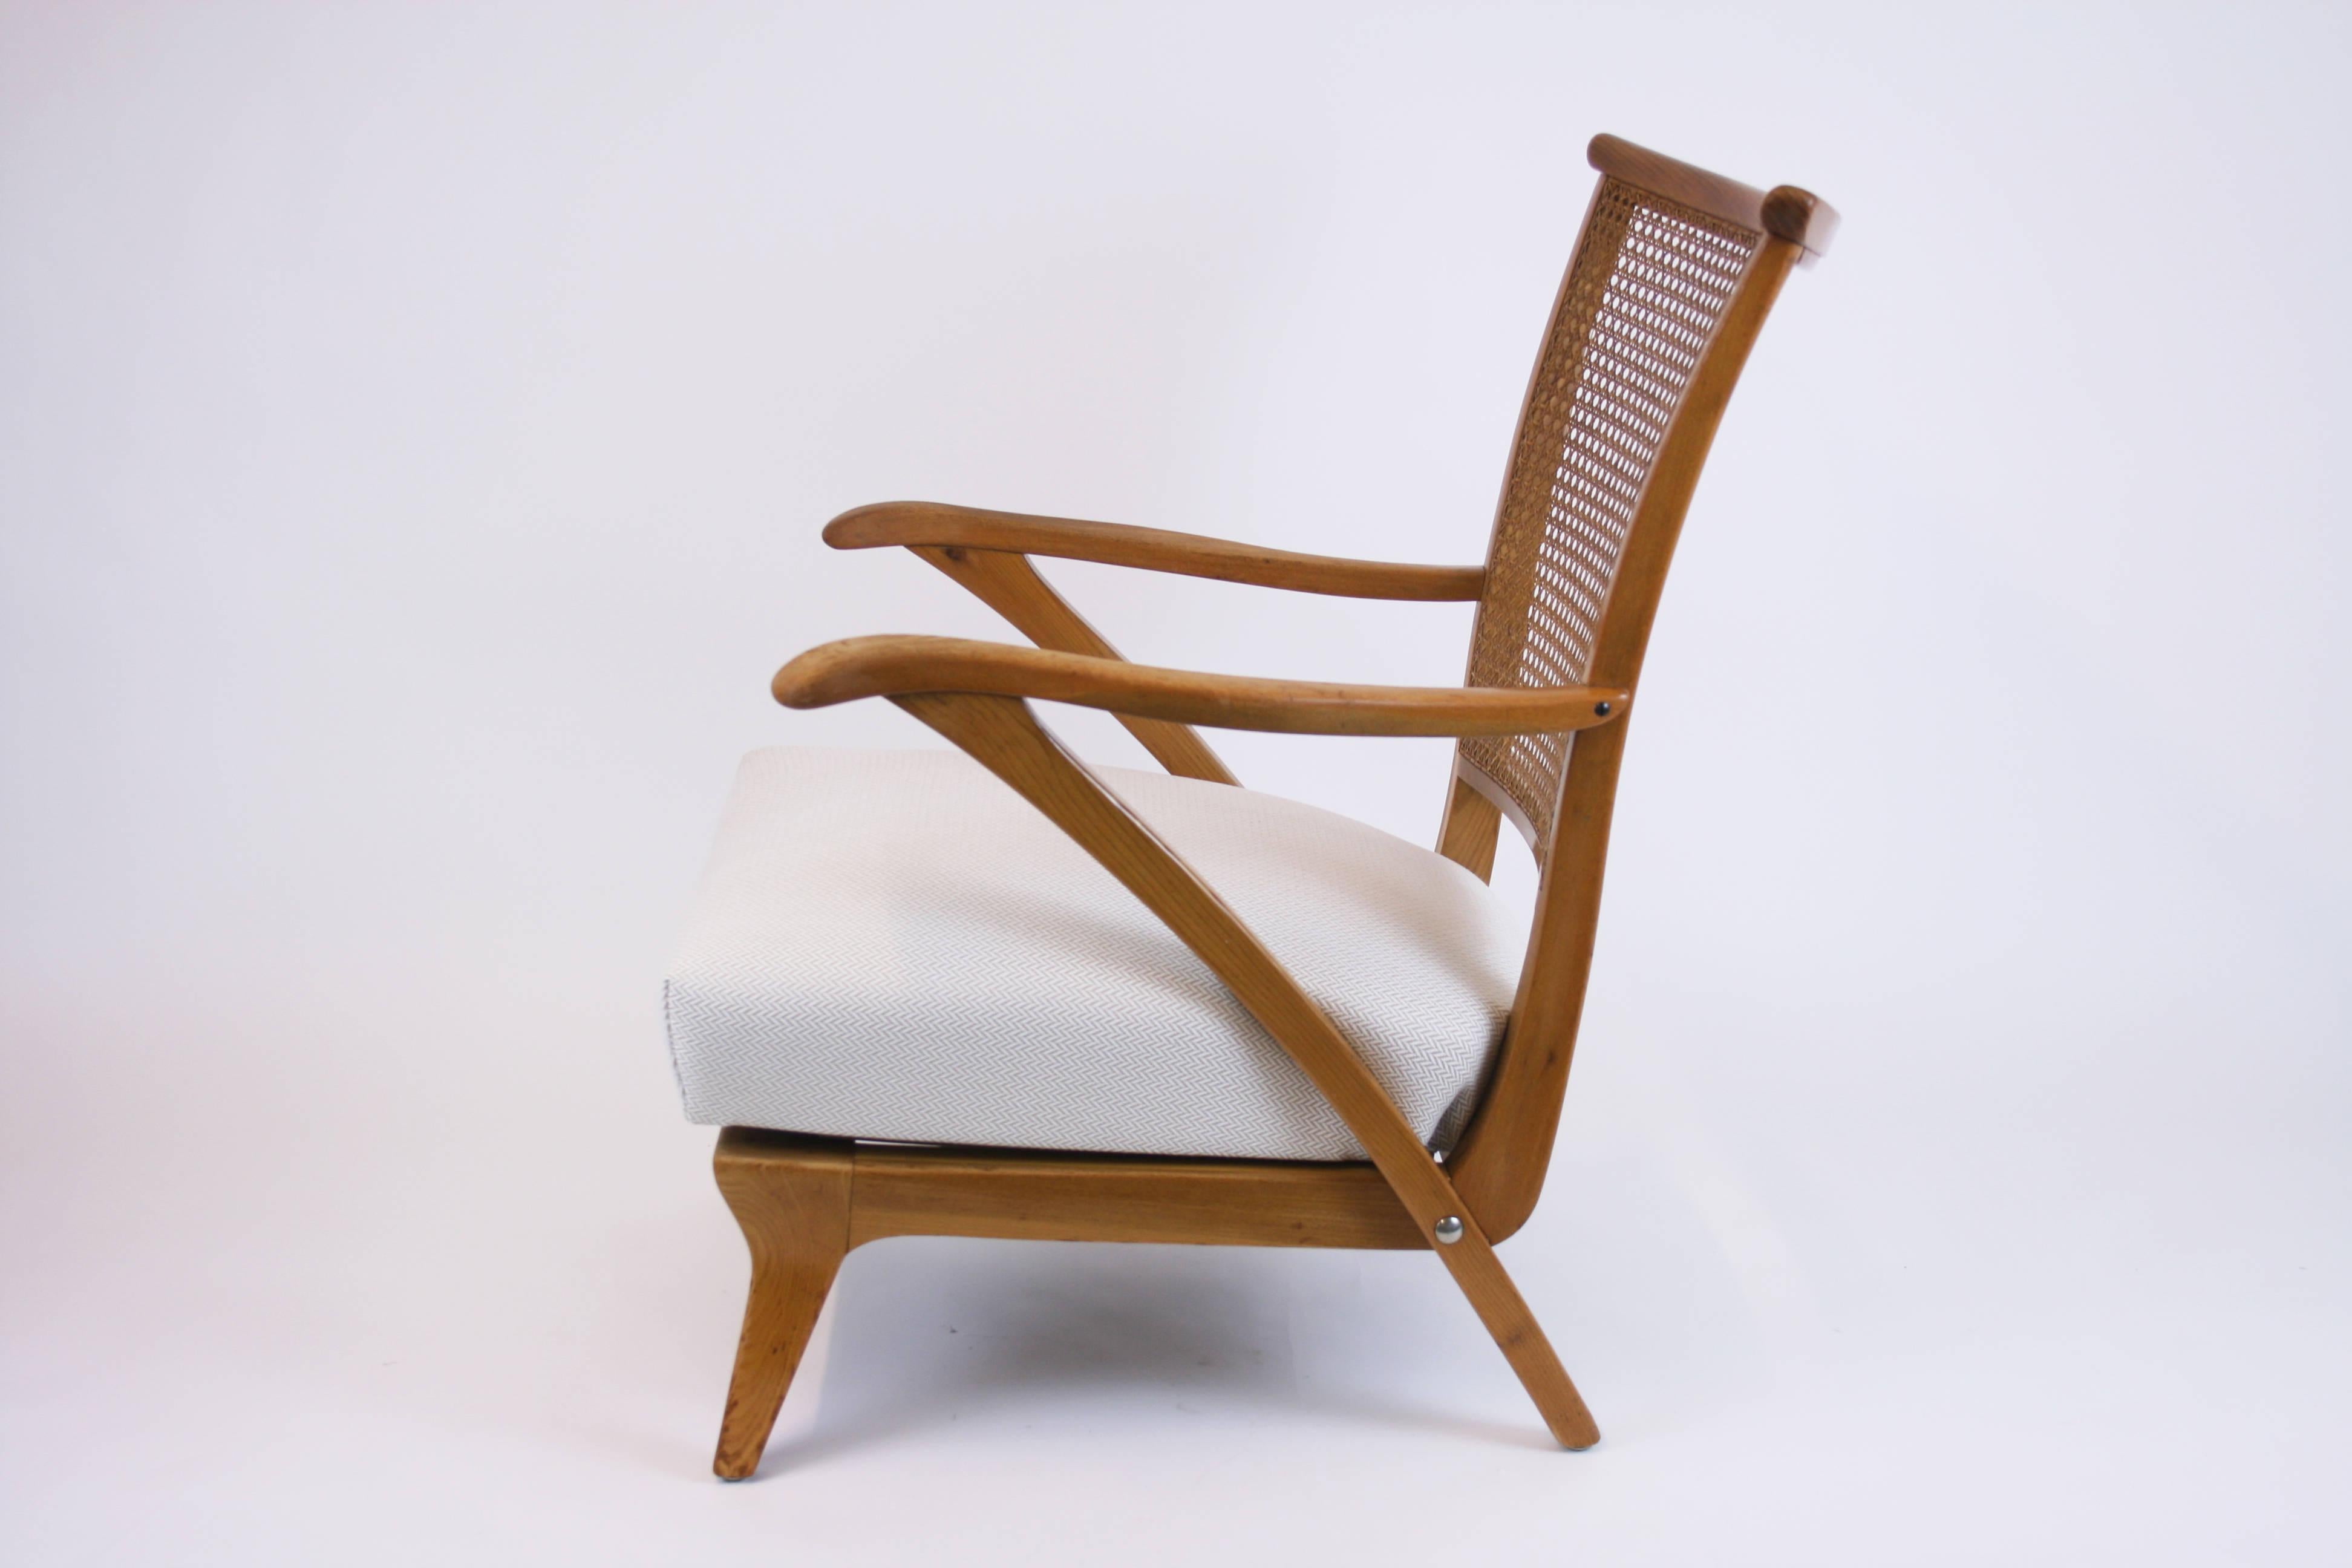 Ein sehr einzigartiger und sehr bequemer Sessel, der zweifellos österreichischer Herkunft ist. Das Sitzkissen wurde neu mit Fischgrätstoff bezogen, der perfekt mit dem warmen Farbton des Holzes korrespondiert. Das feine handgefertigte Wiener